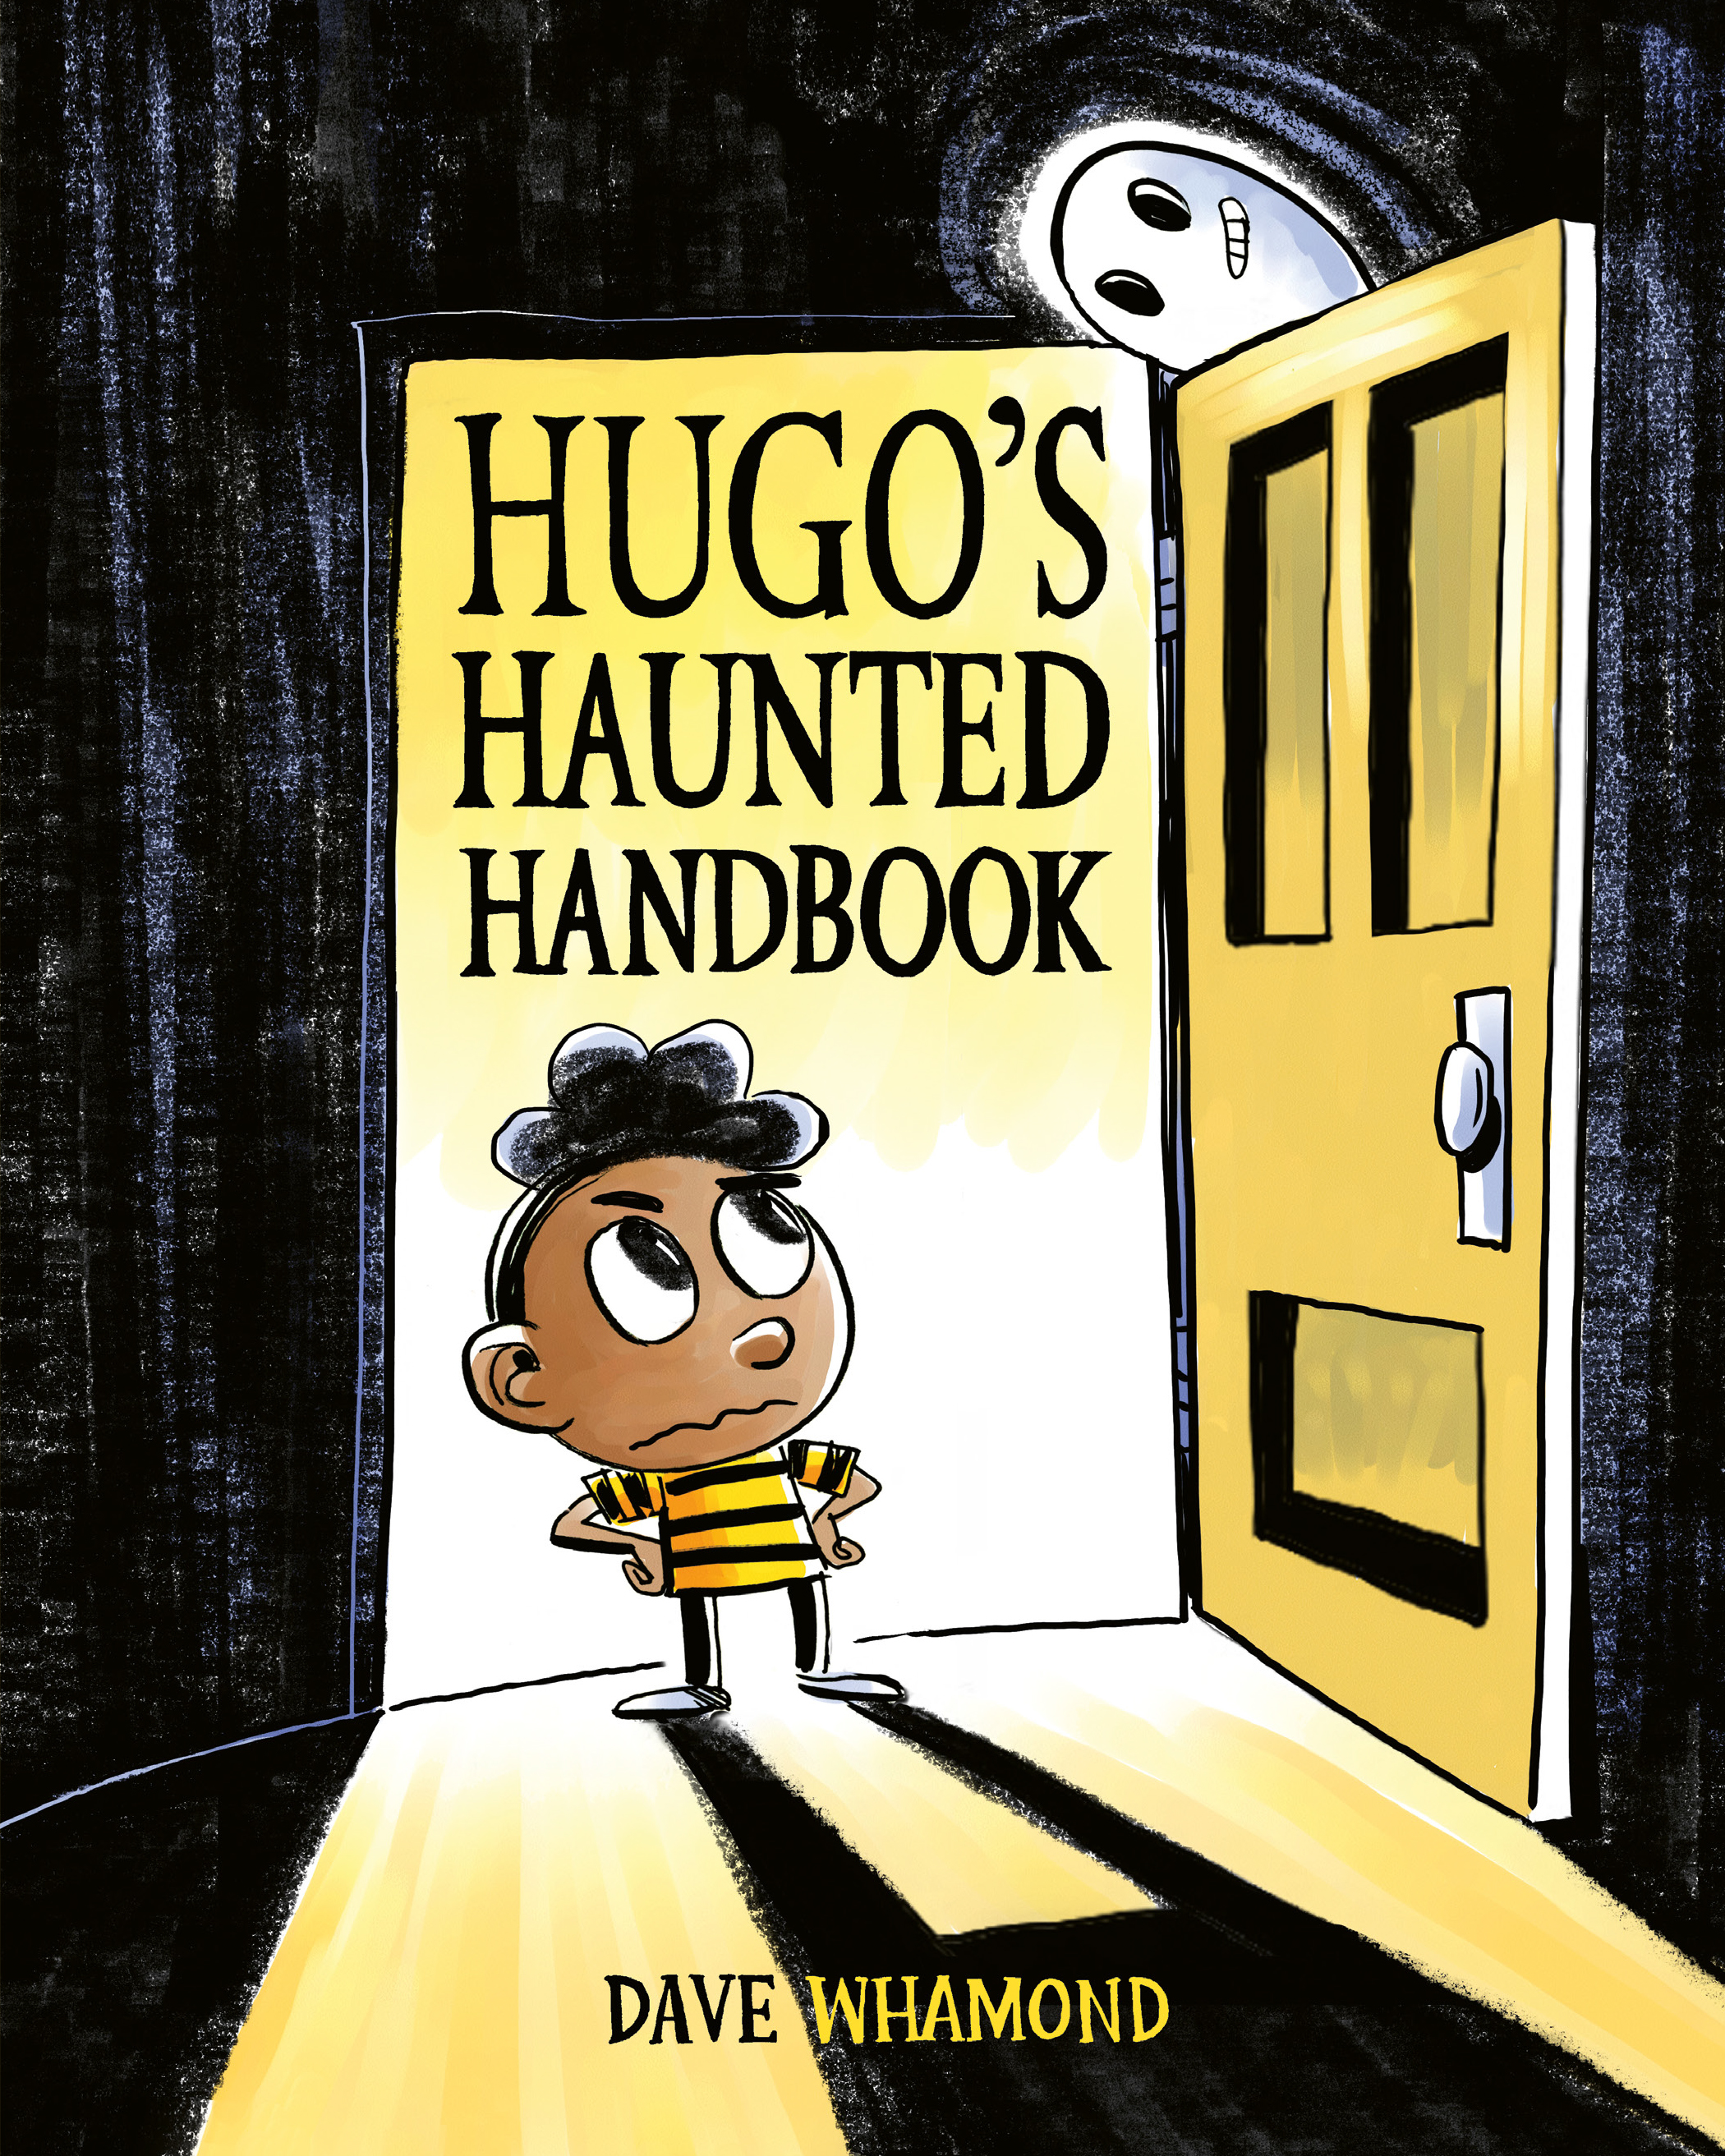 Hugo's Haunted Handbook